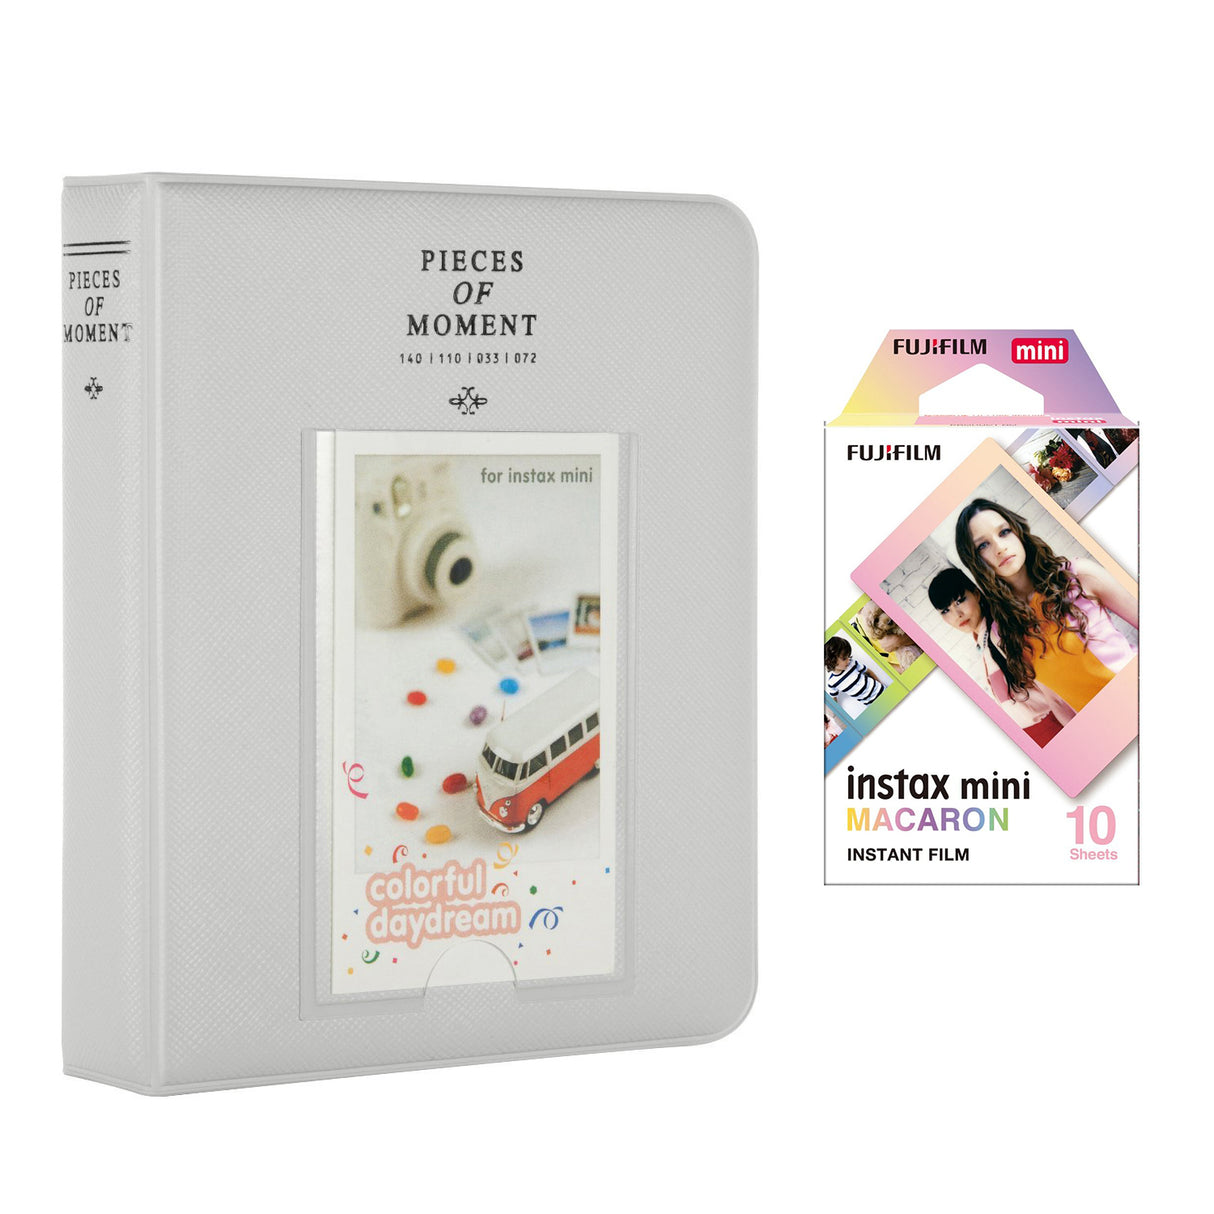 Fujifilm Instax Mini 10X1 macaron Instant Film with Instax Time Photo Album 64 Sheets Smokey white